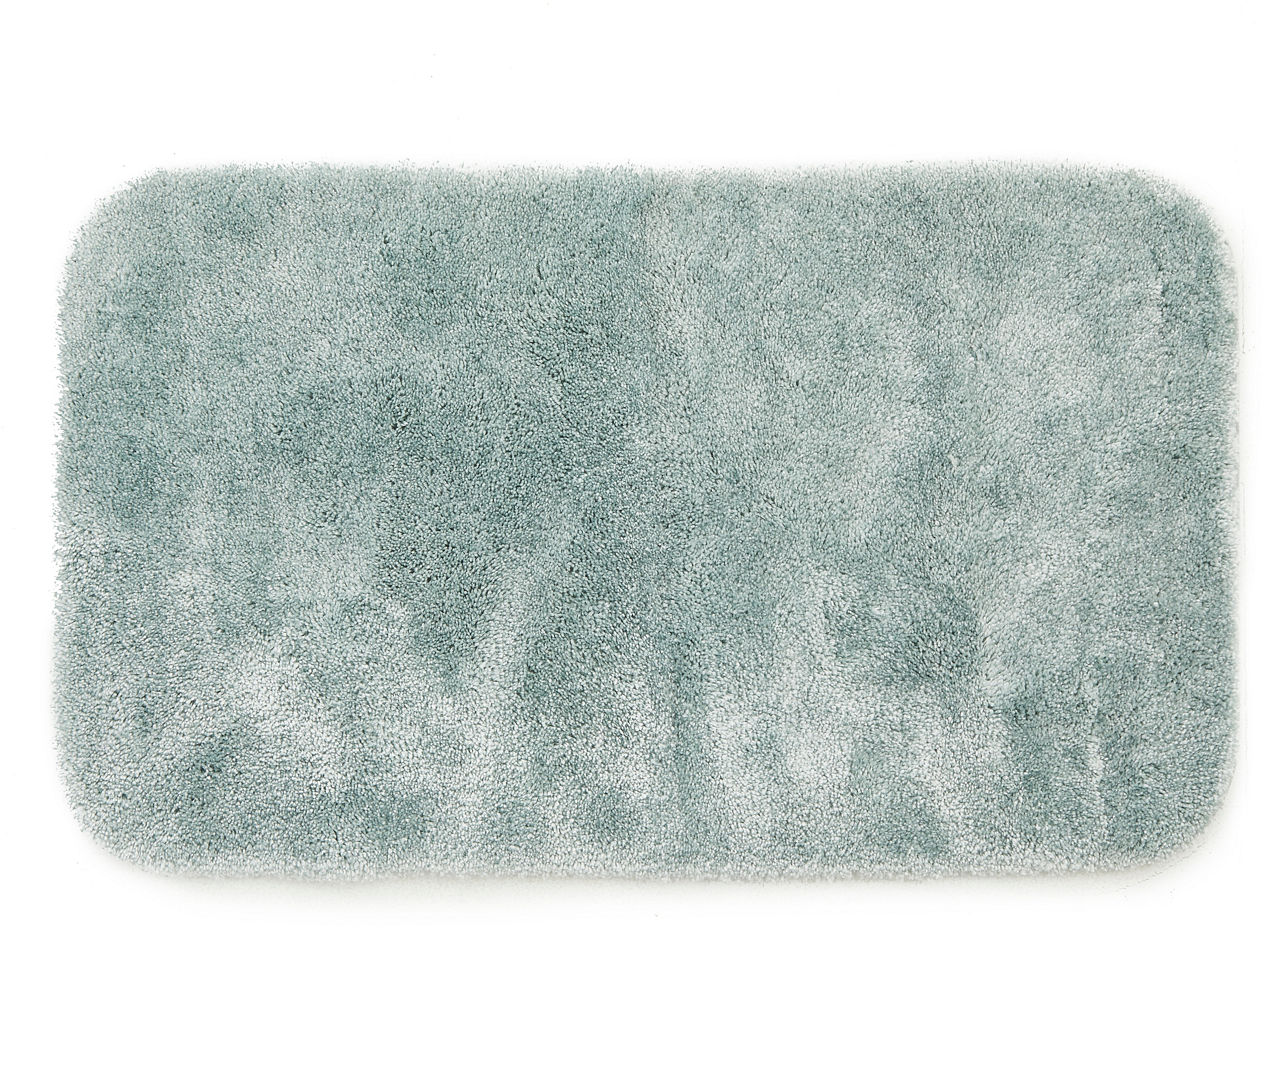 Slate Blue Bath Rug, (24" x 36")